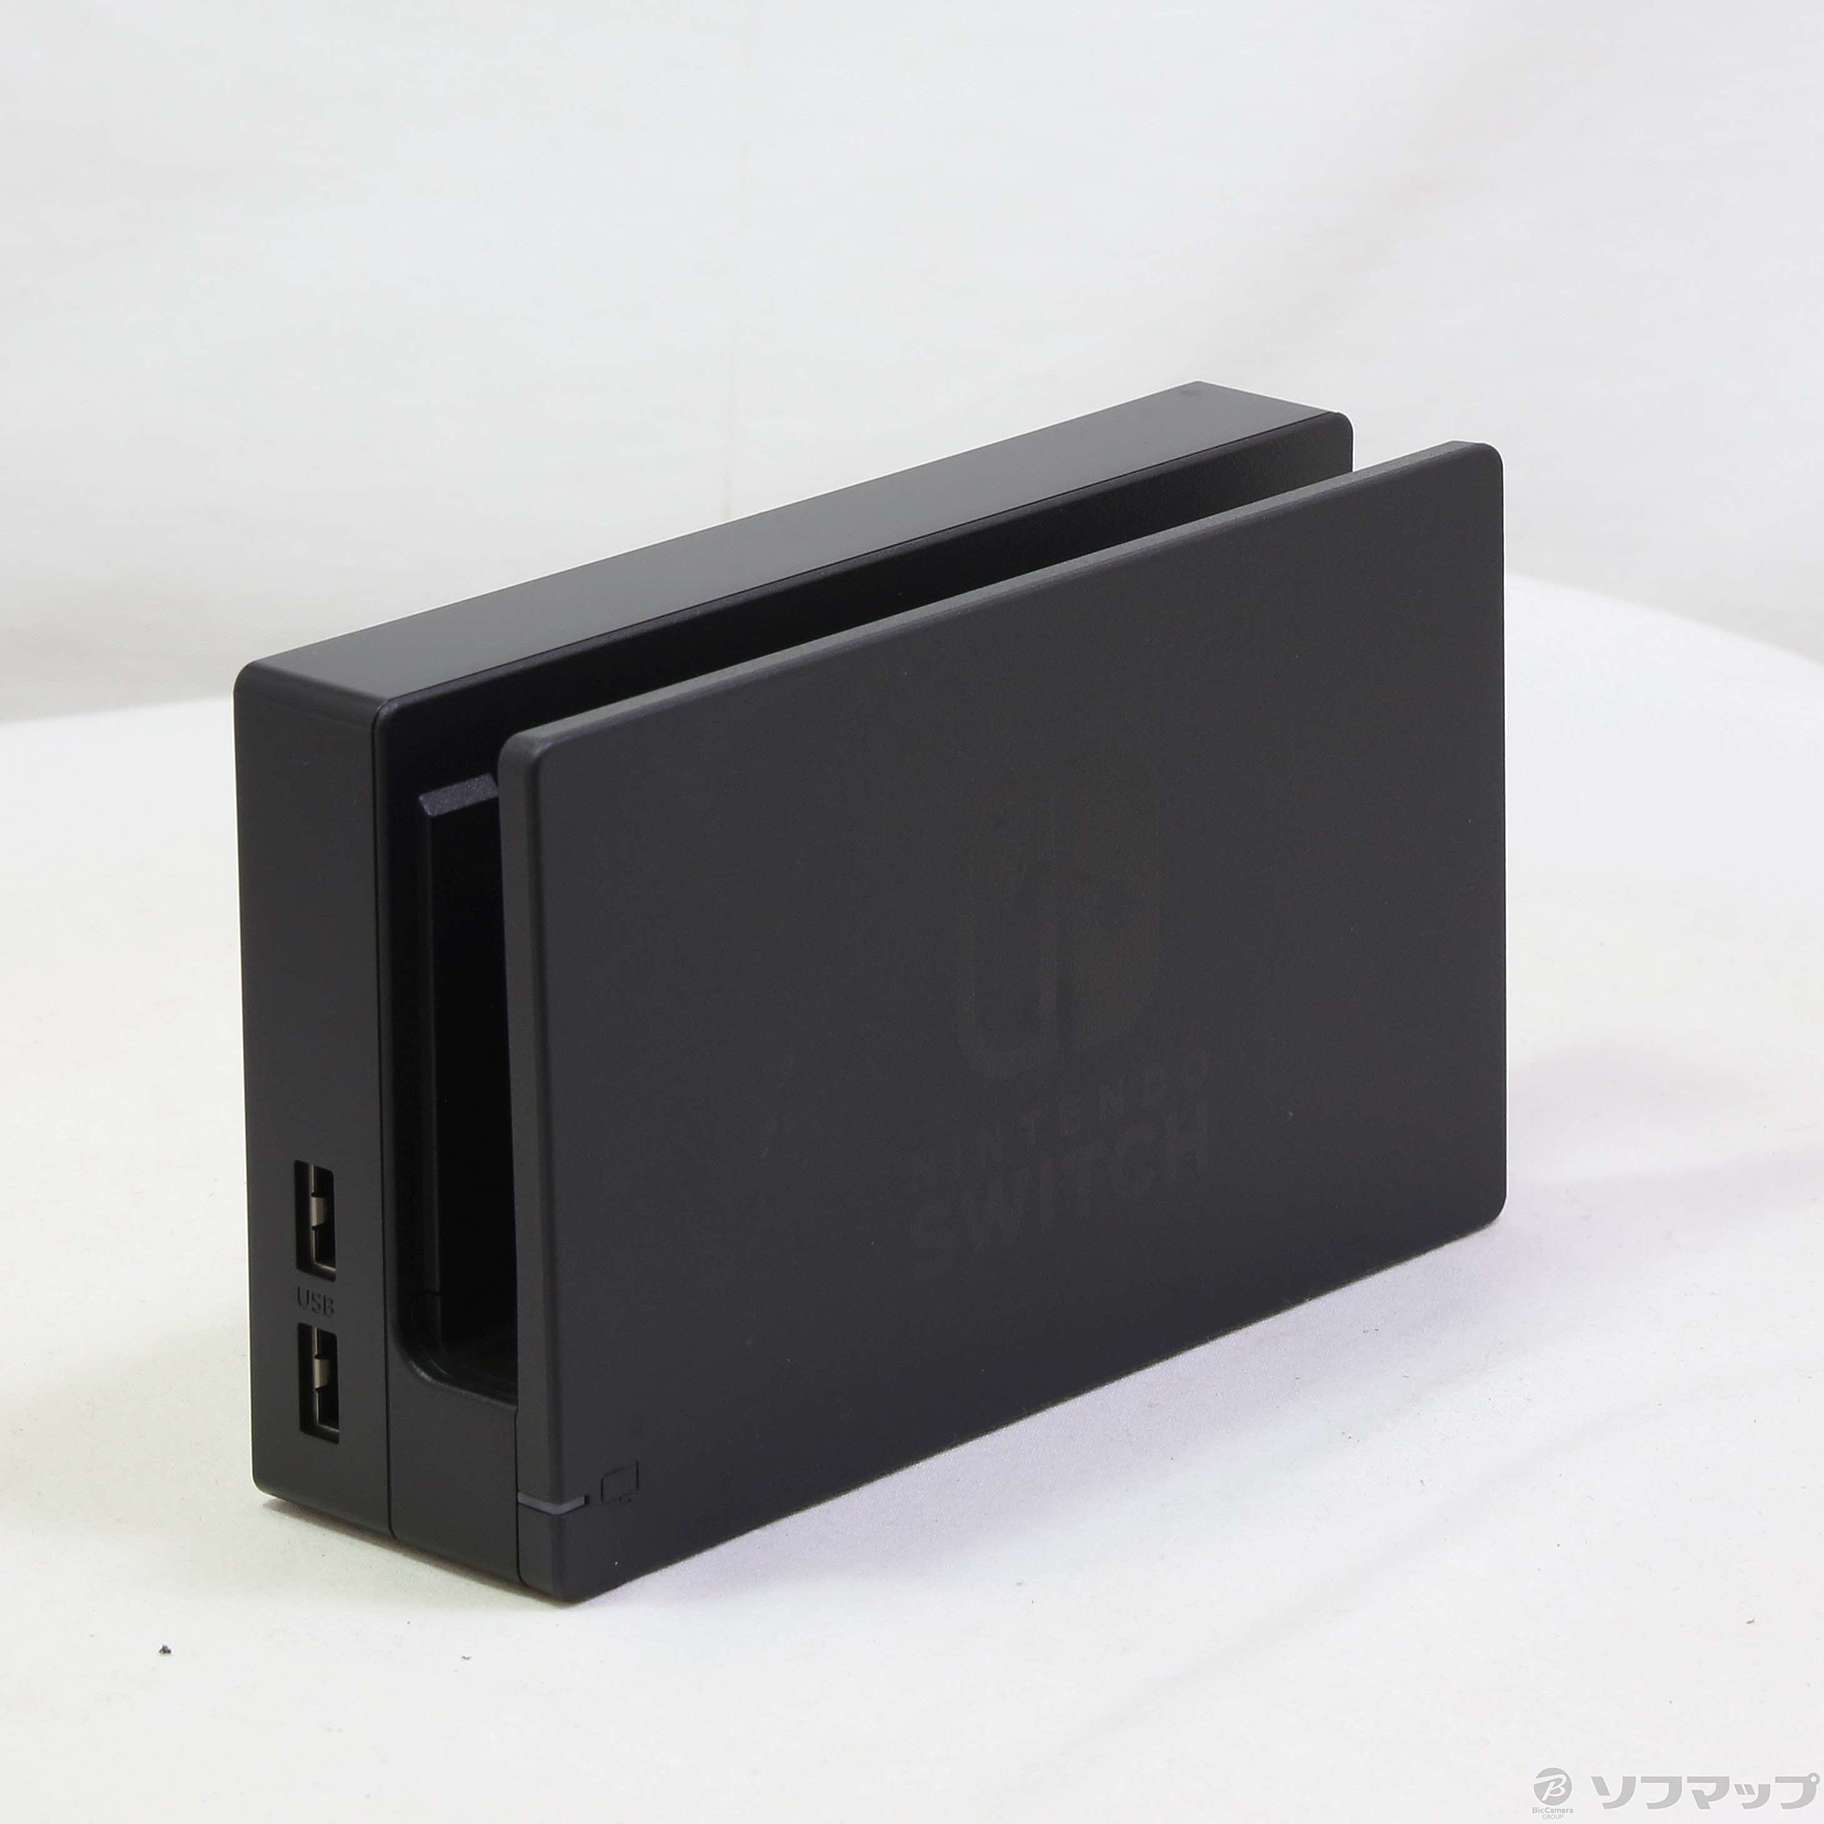 Exynos 初代Nintendo Switch(HAC-001) + ドックセット | www.artfive.co.jp